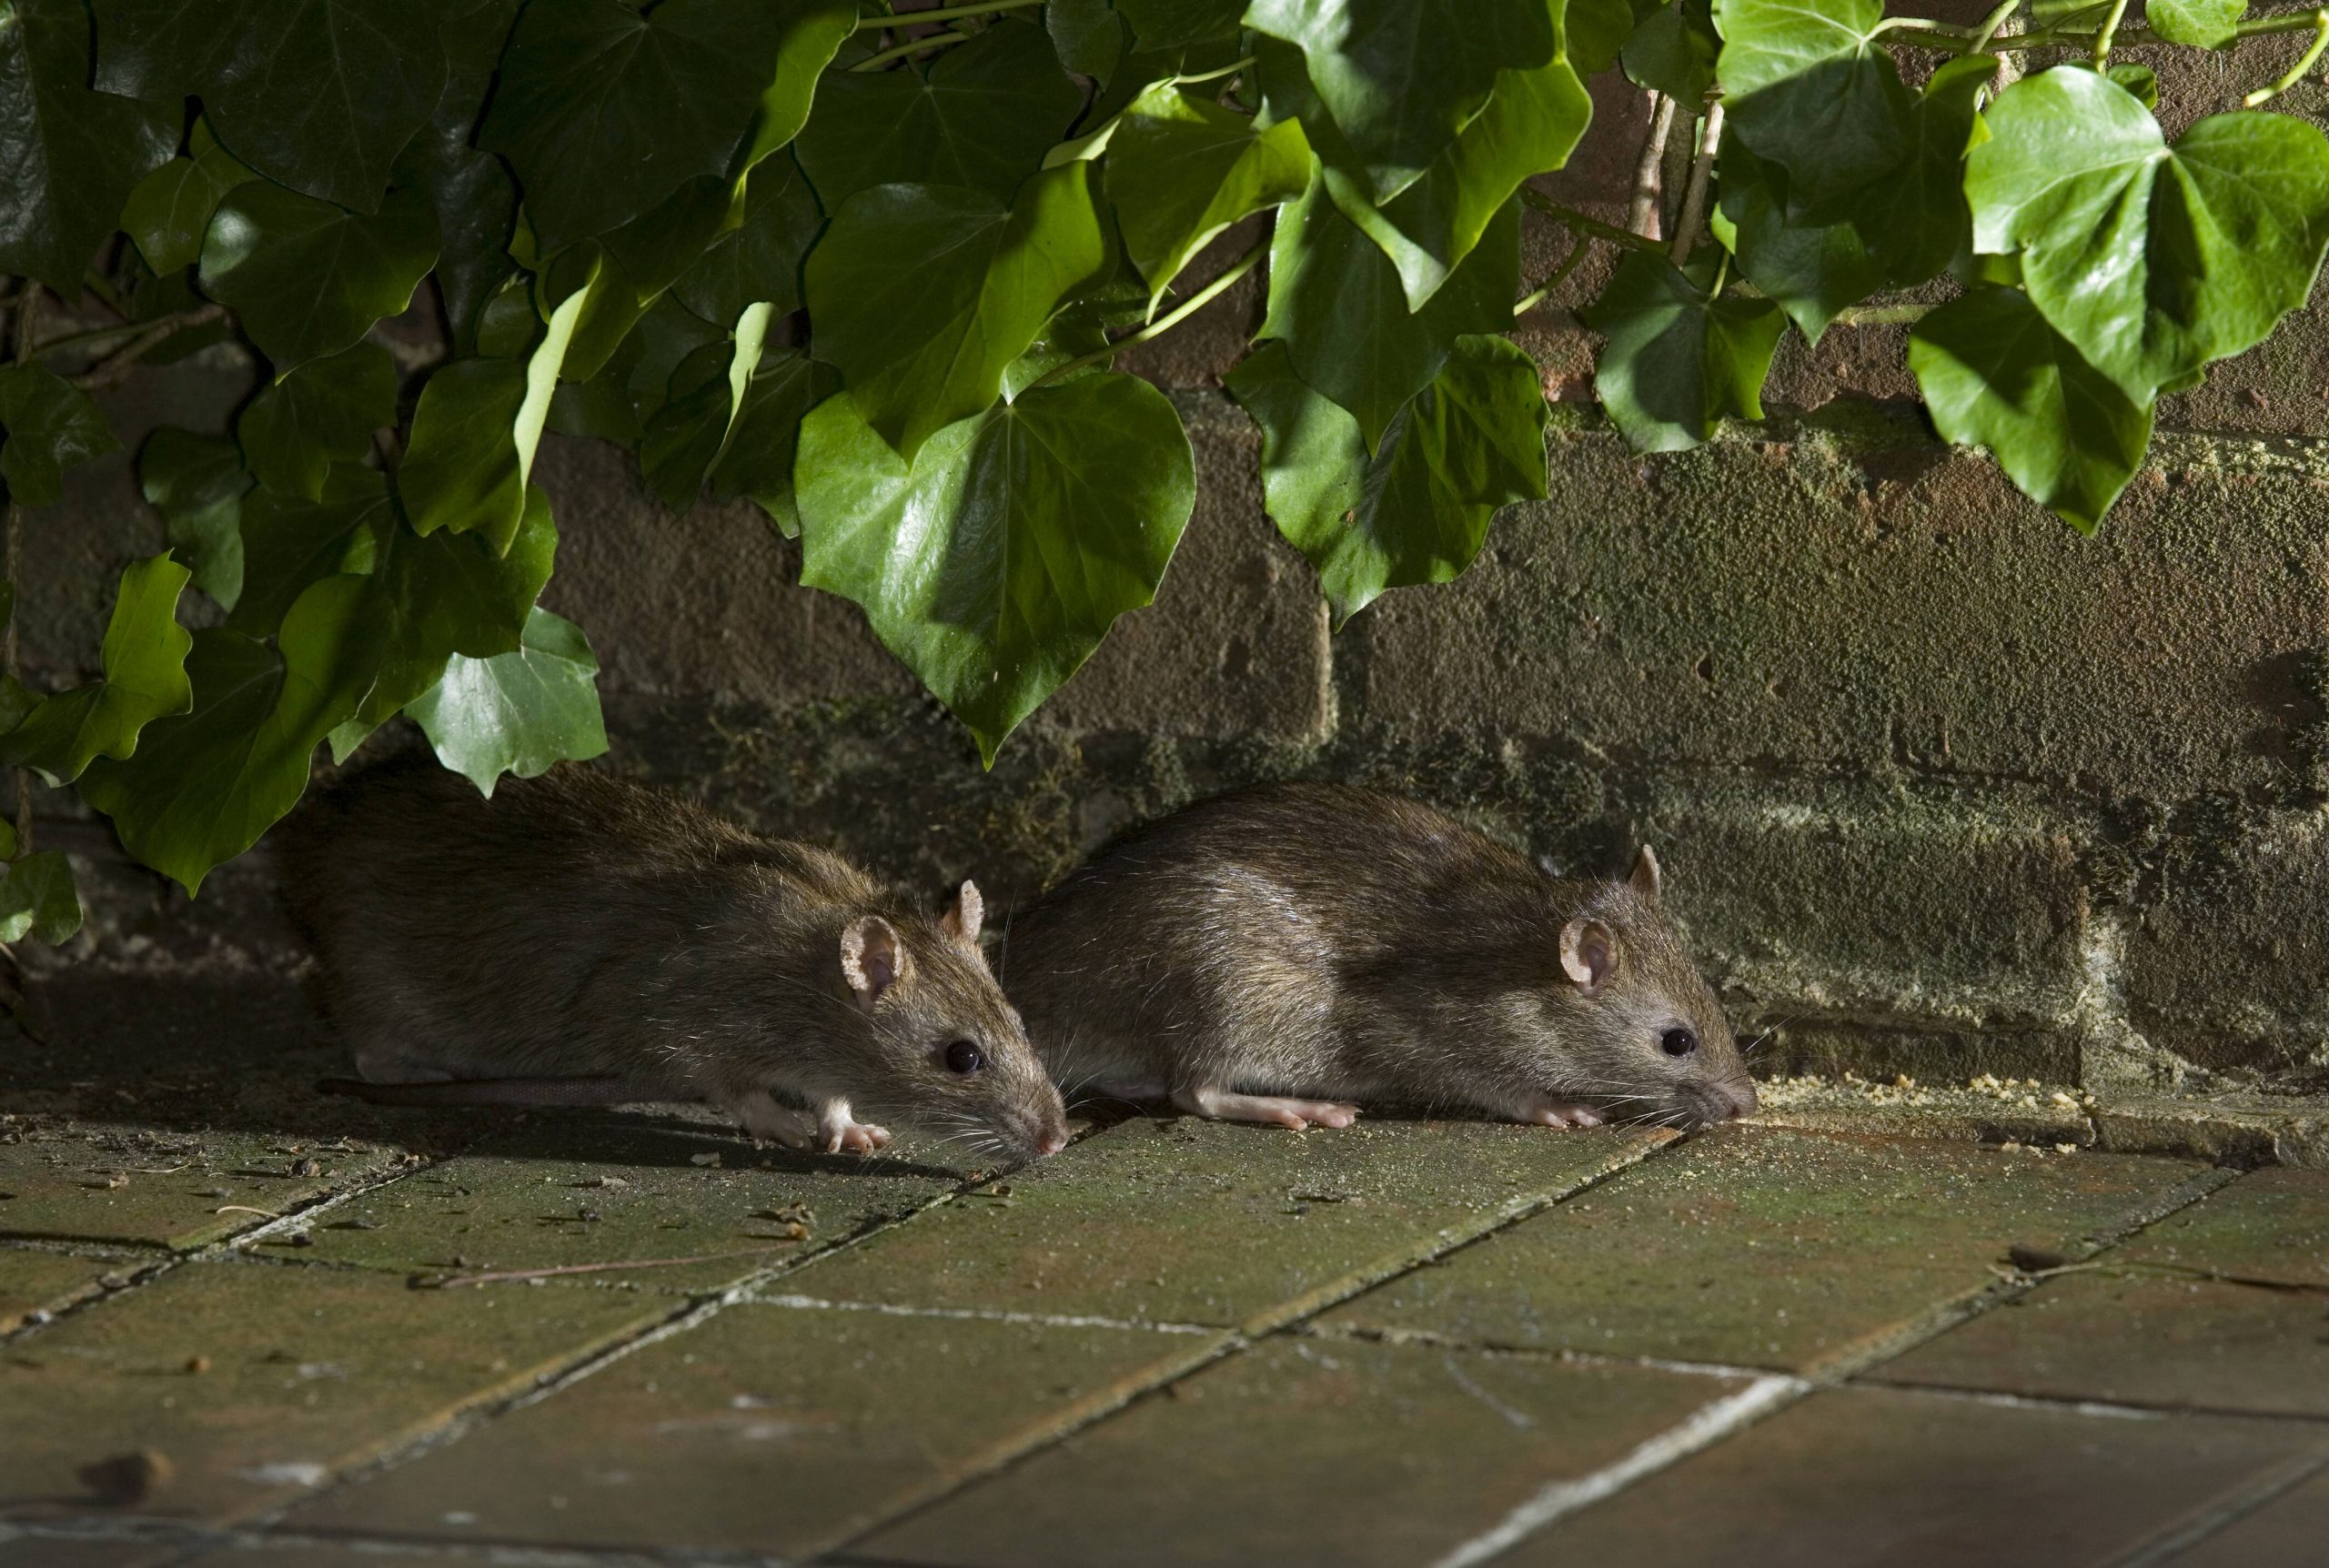 In den Hamburger Parks gibt es immer häufiger abends Ratten. (Symbolbild)